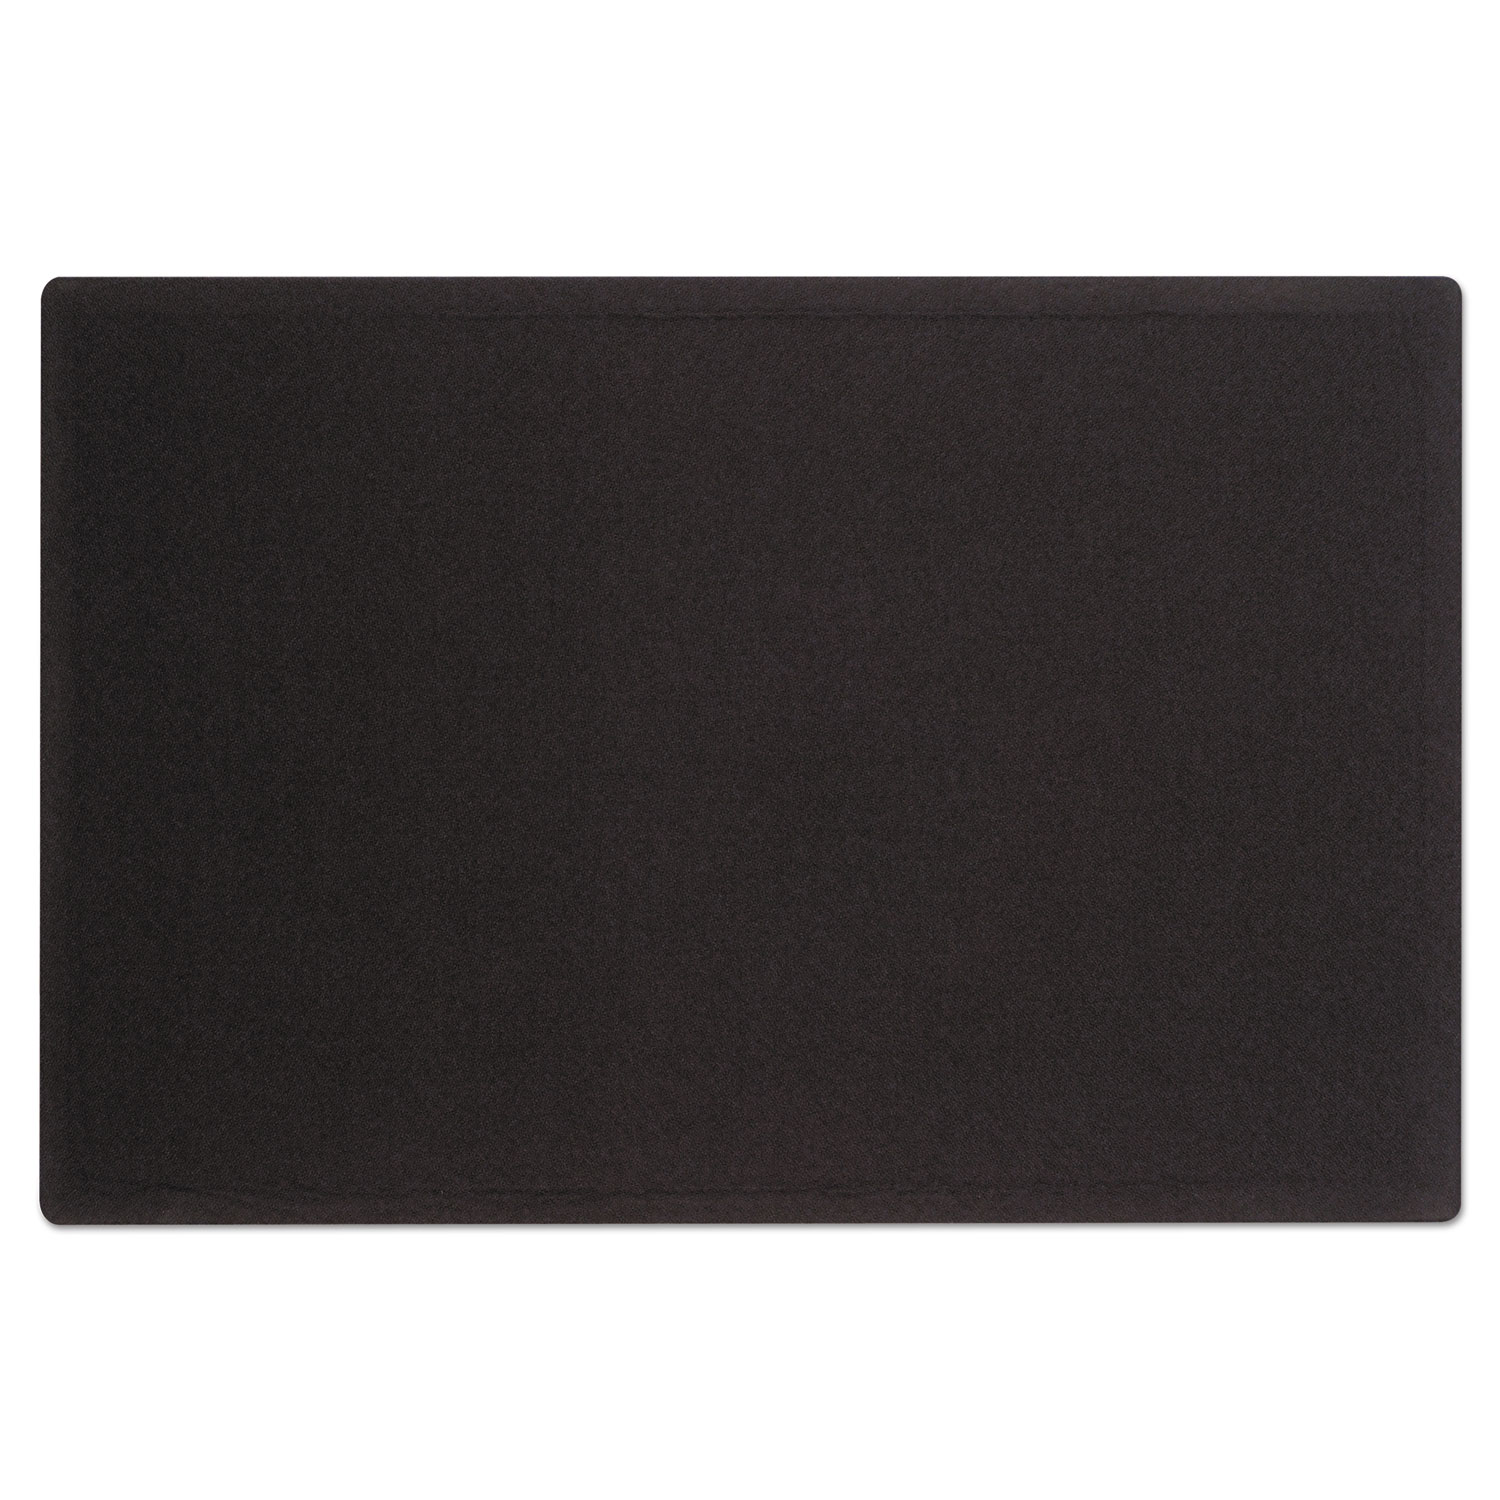  Quartet 7684BK Oval Office Fabric Bulletin Board, 48 x 36, Black (QRT7684BK) 